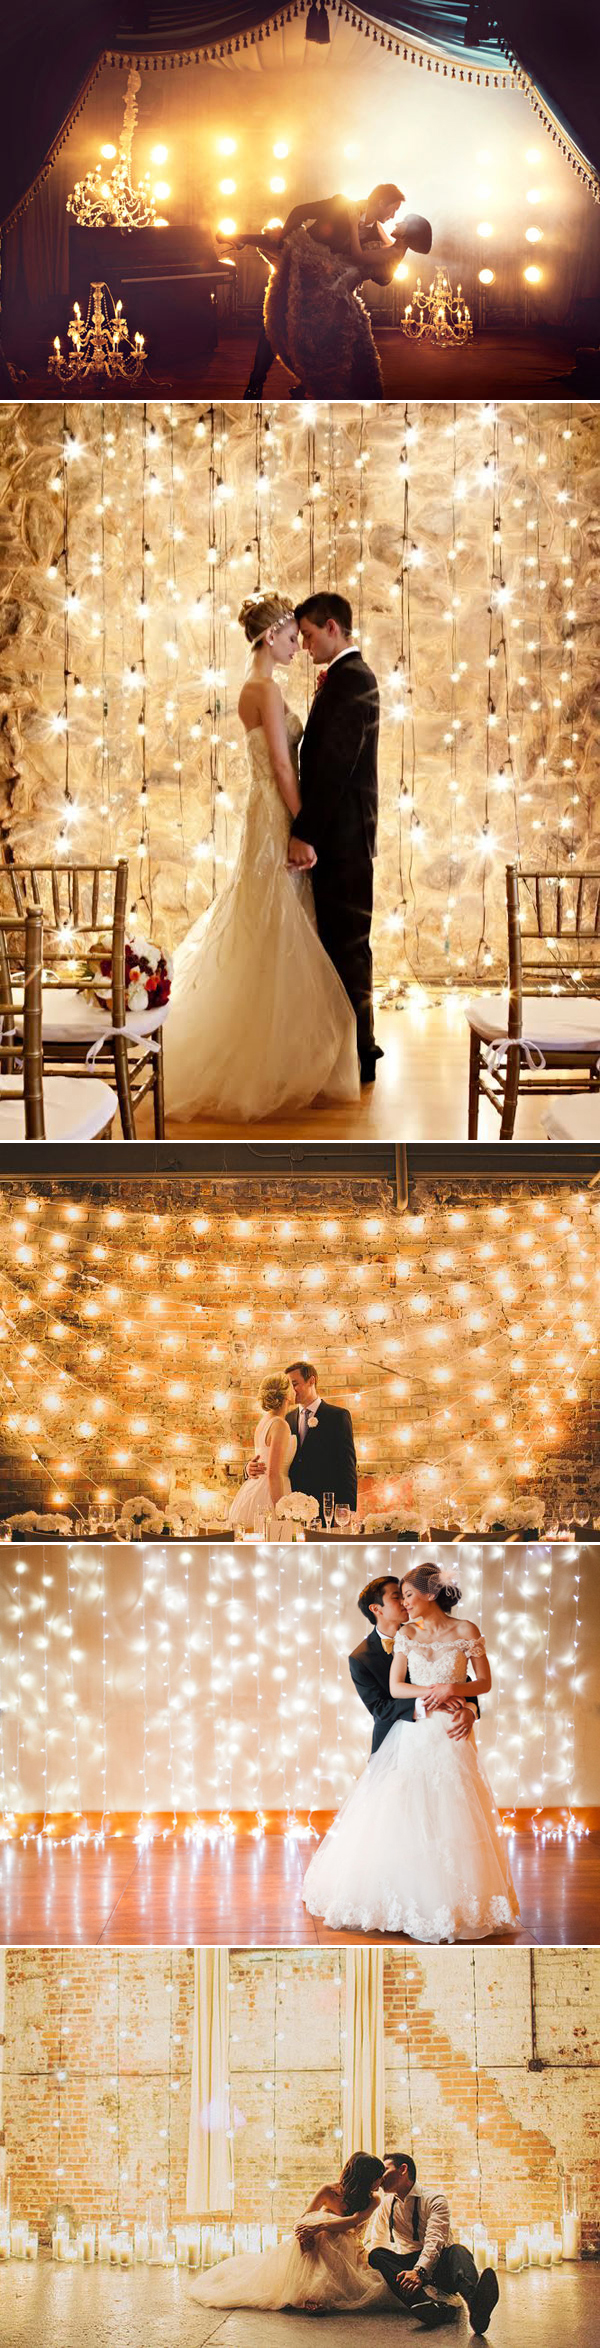 Magical Lighting Wedding Backdrop